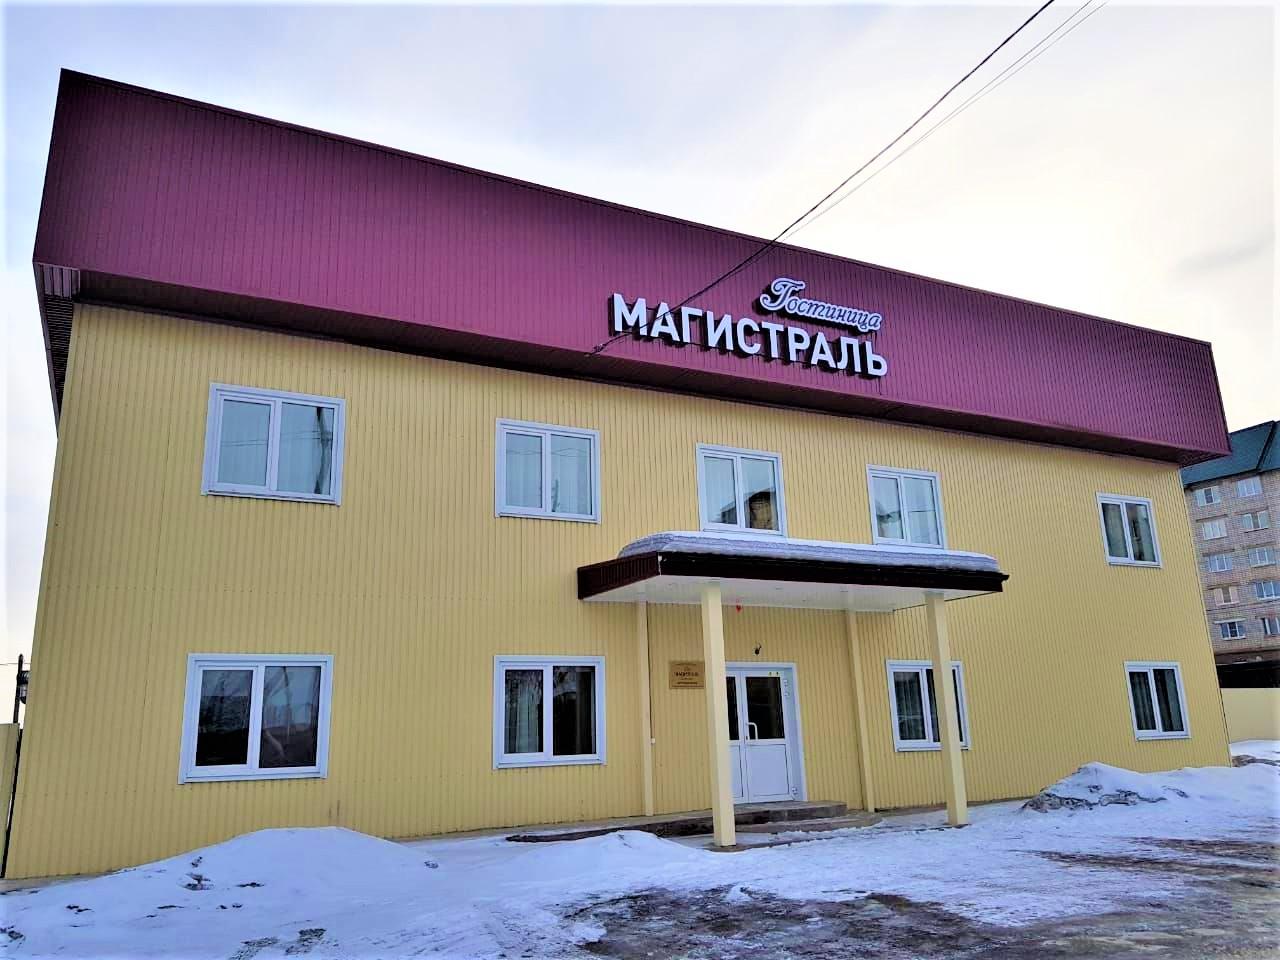 Гостиницы в Магистральном Иркутской